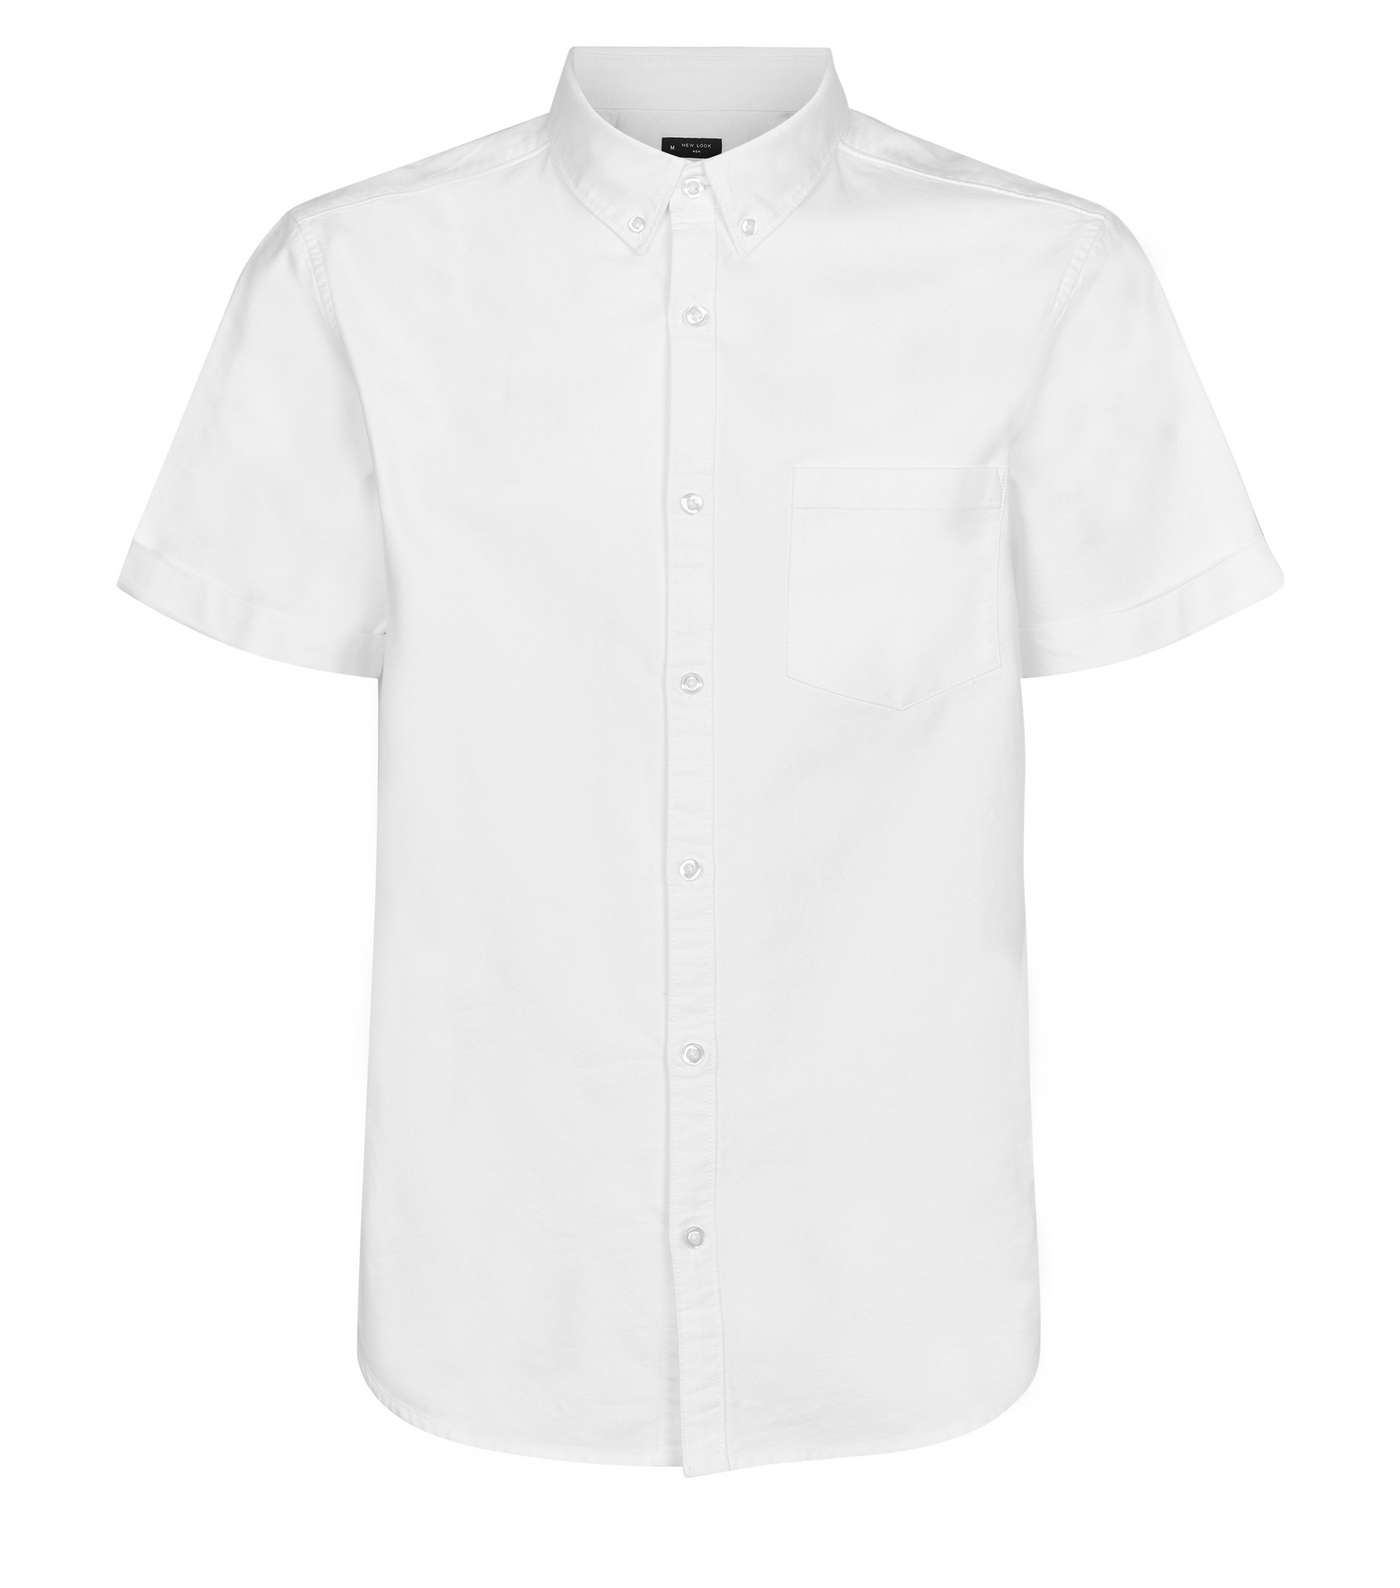 White Oxford Short Sleeve Shirt Image 4